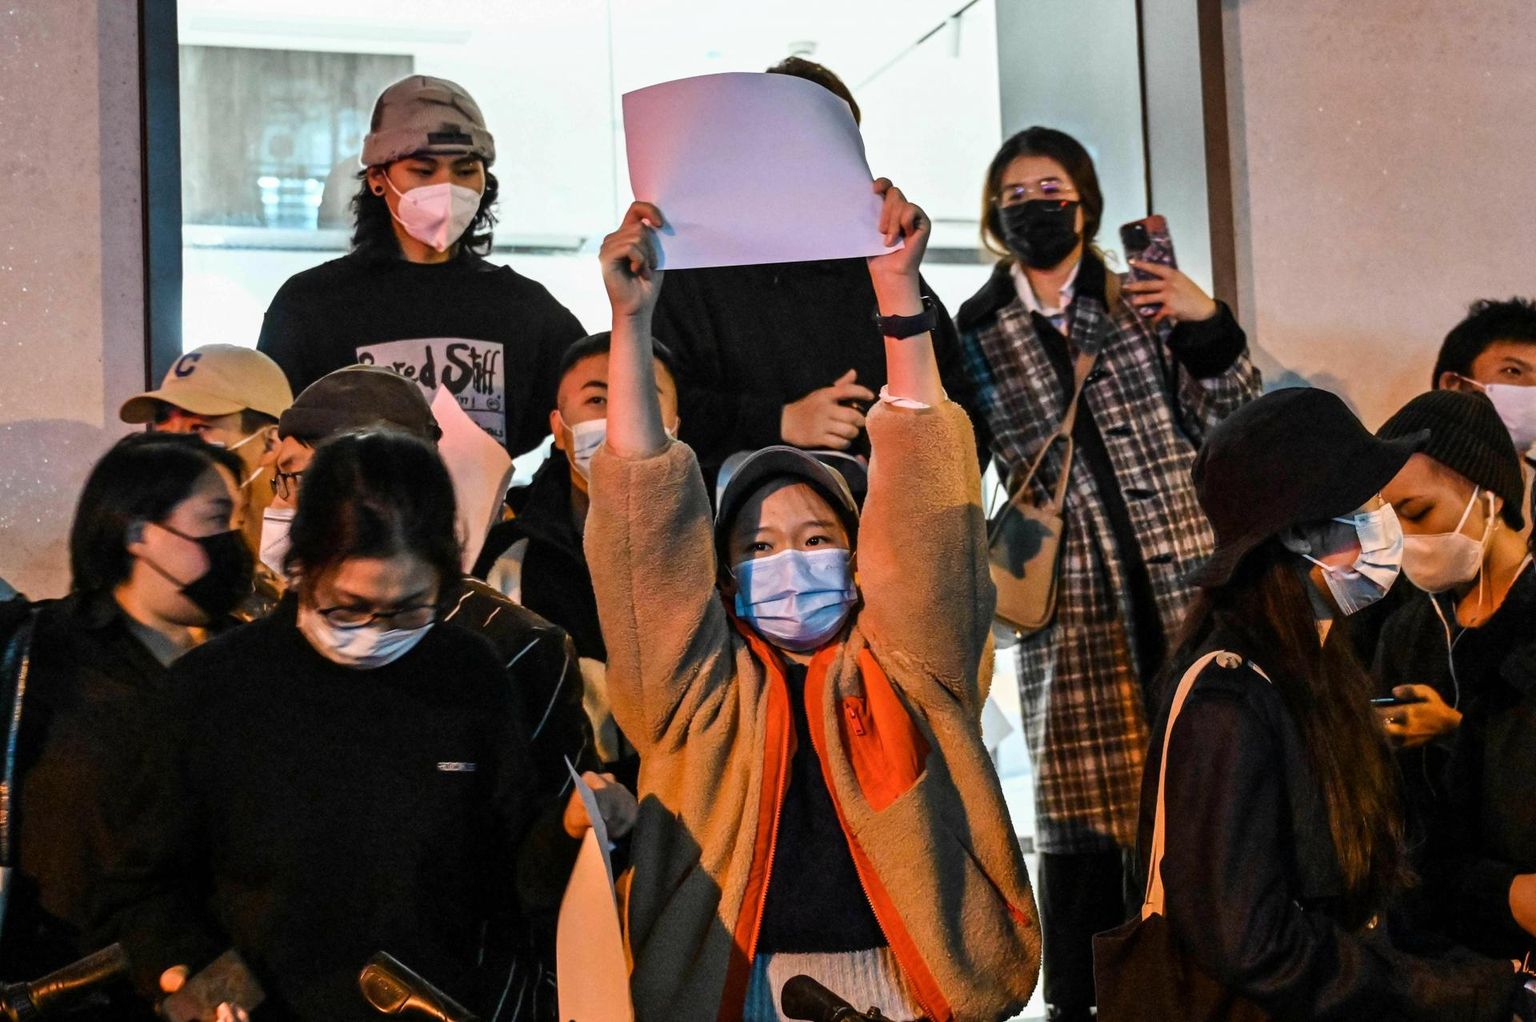 Protesti märgiks tühja paberilehte käes hoidev naine eile Shanghais meeleavaldusel Hiina koroonapoliitika vastu.